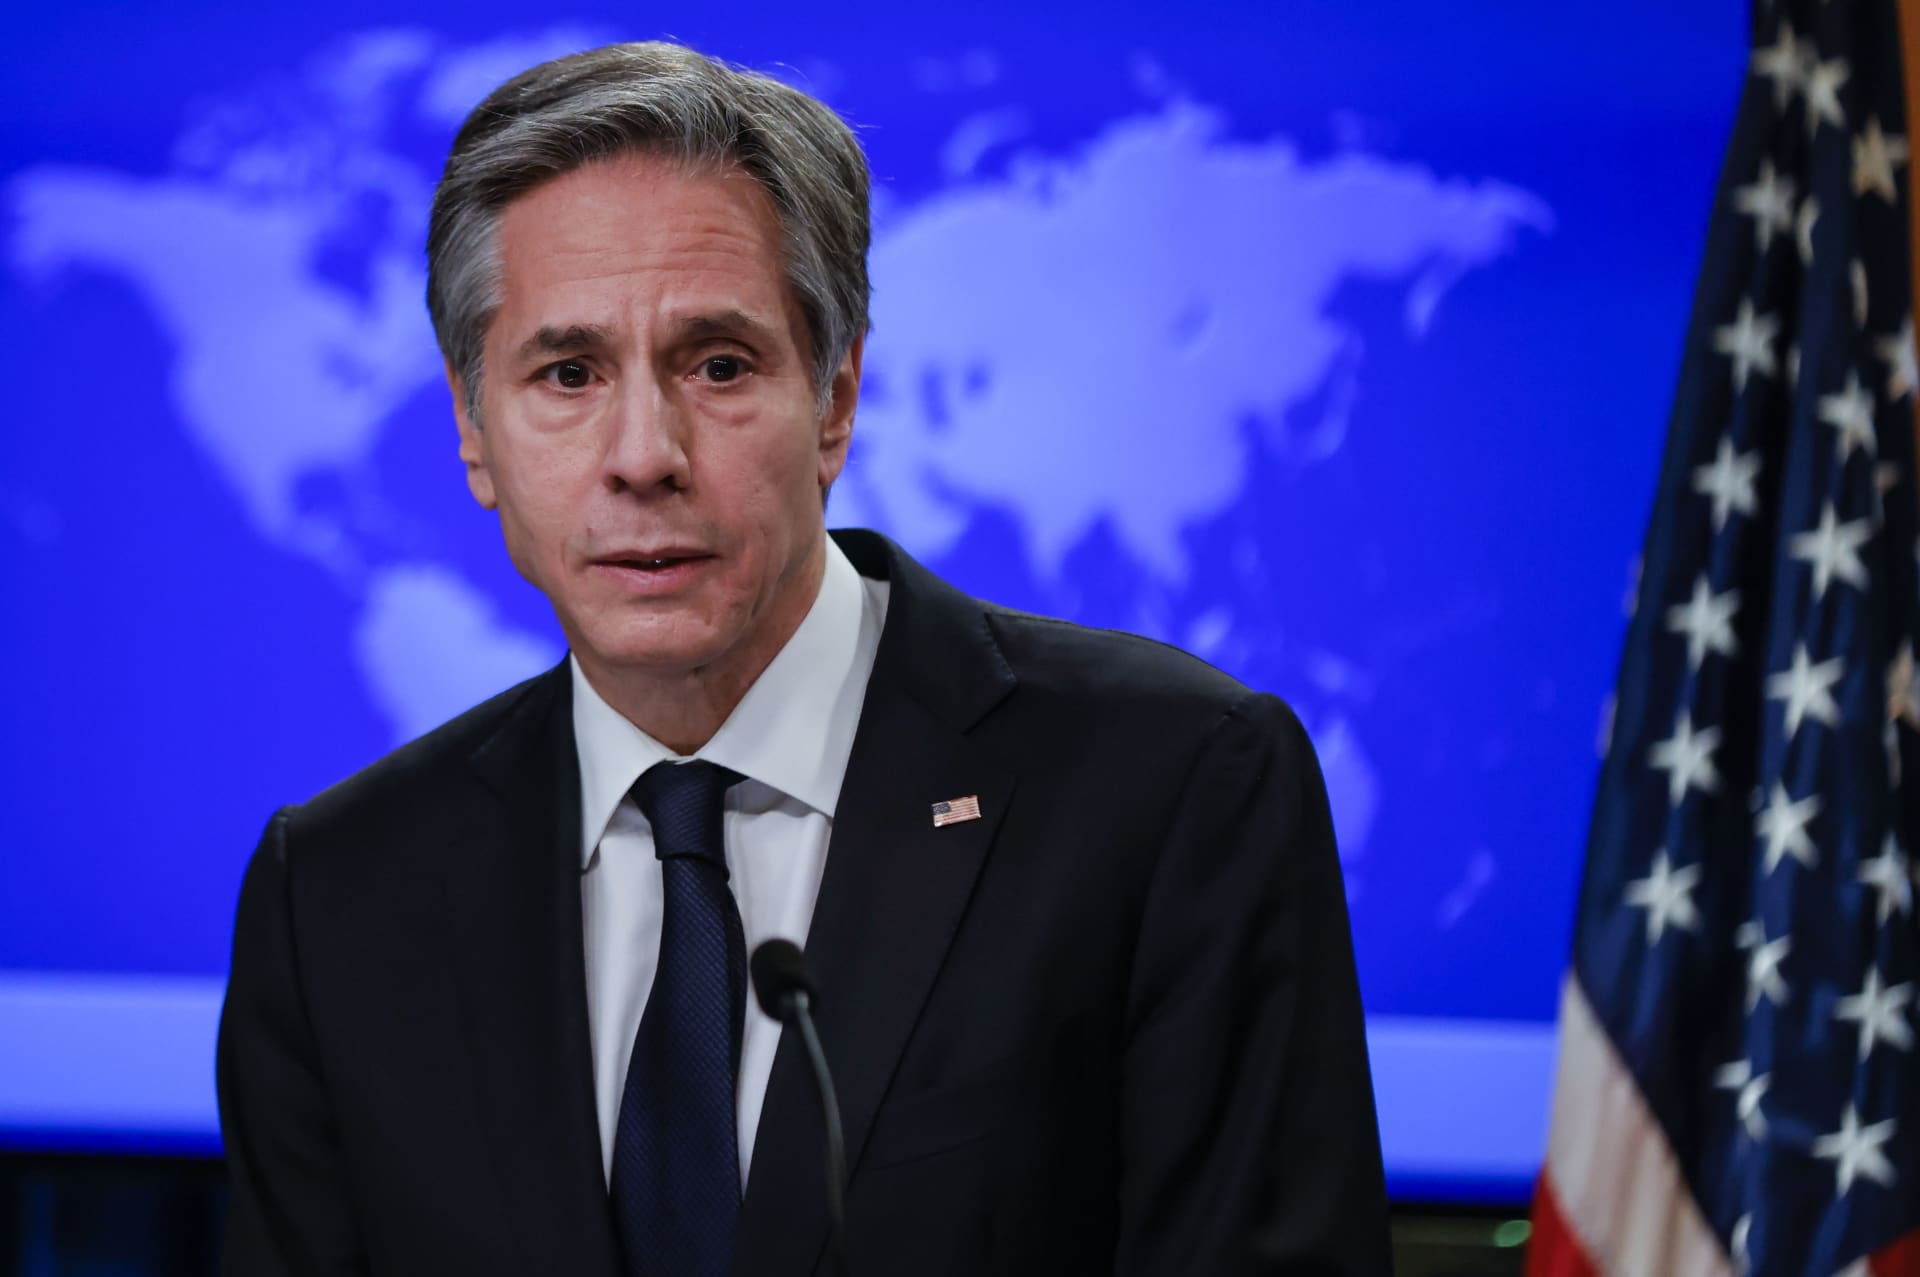 وزارة الخارجية الأمريكية تعلن عن زيارة وفد من الولايات المتحدة إلى بنما لمناقشة قضية المهاجرين